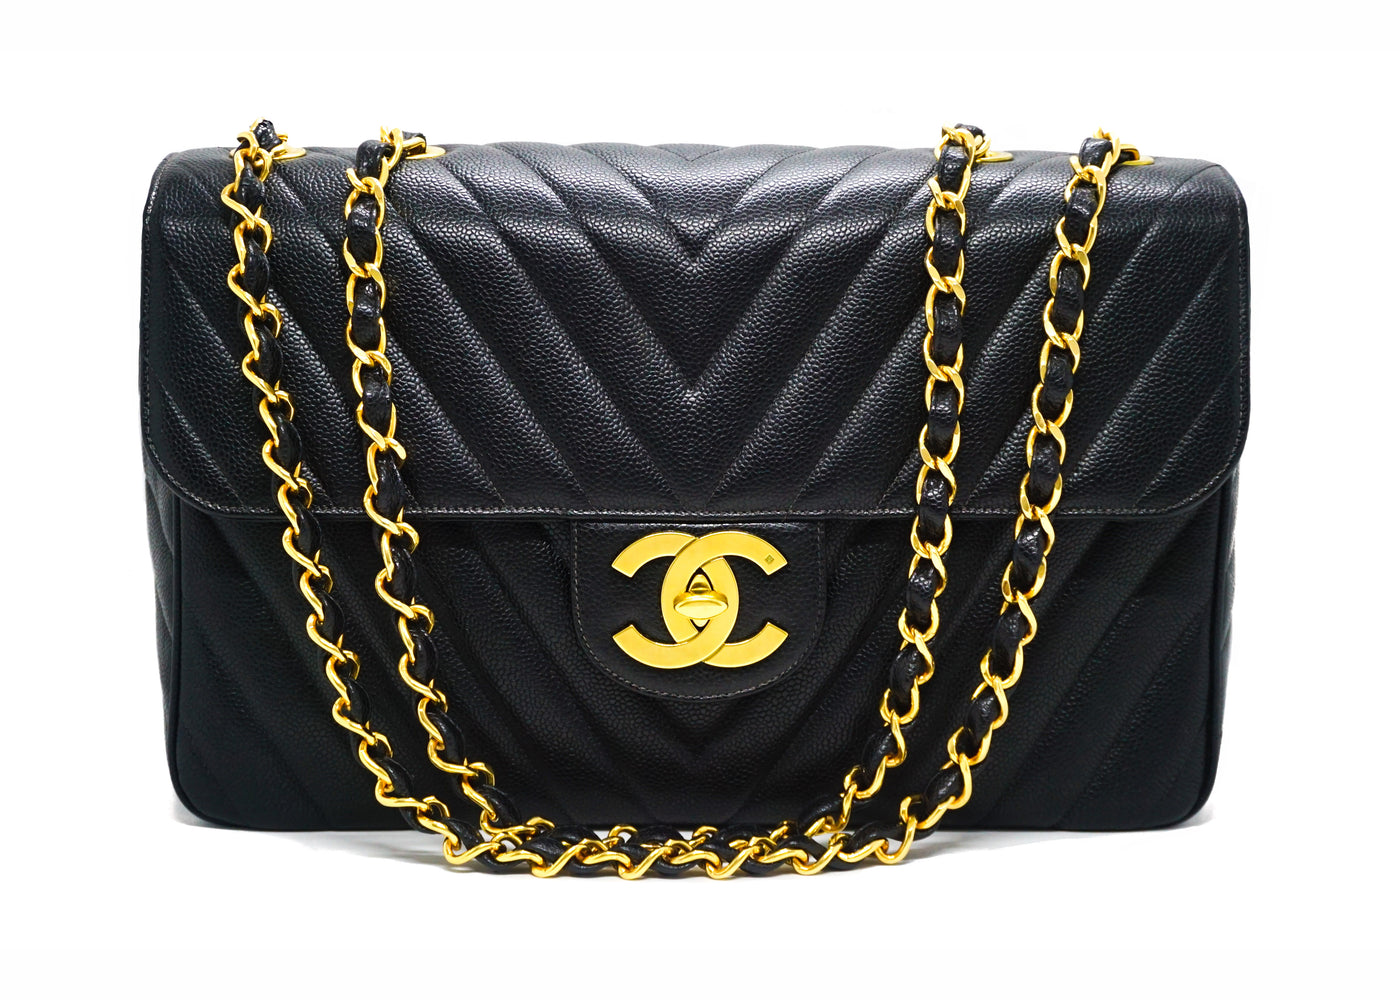 Chanel Vintage Classic Double Flap Bag Chevron Patent Medium Black